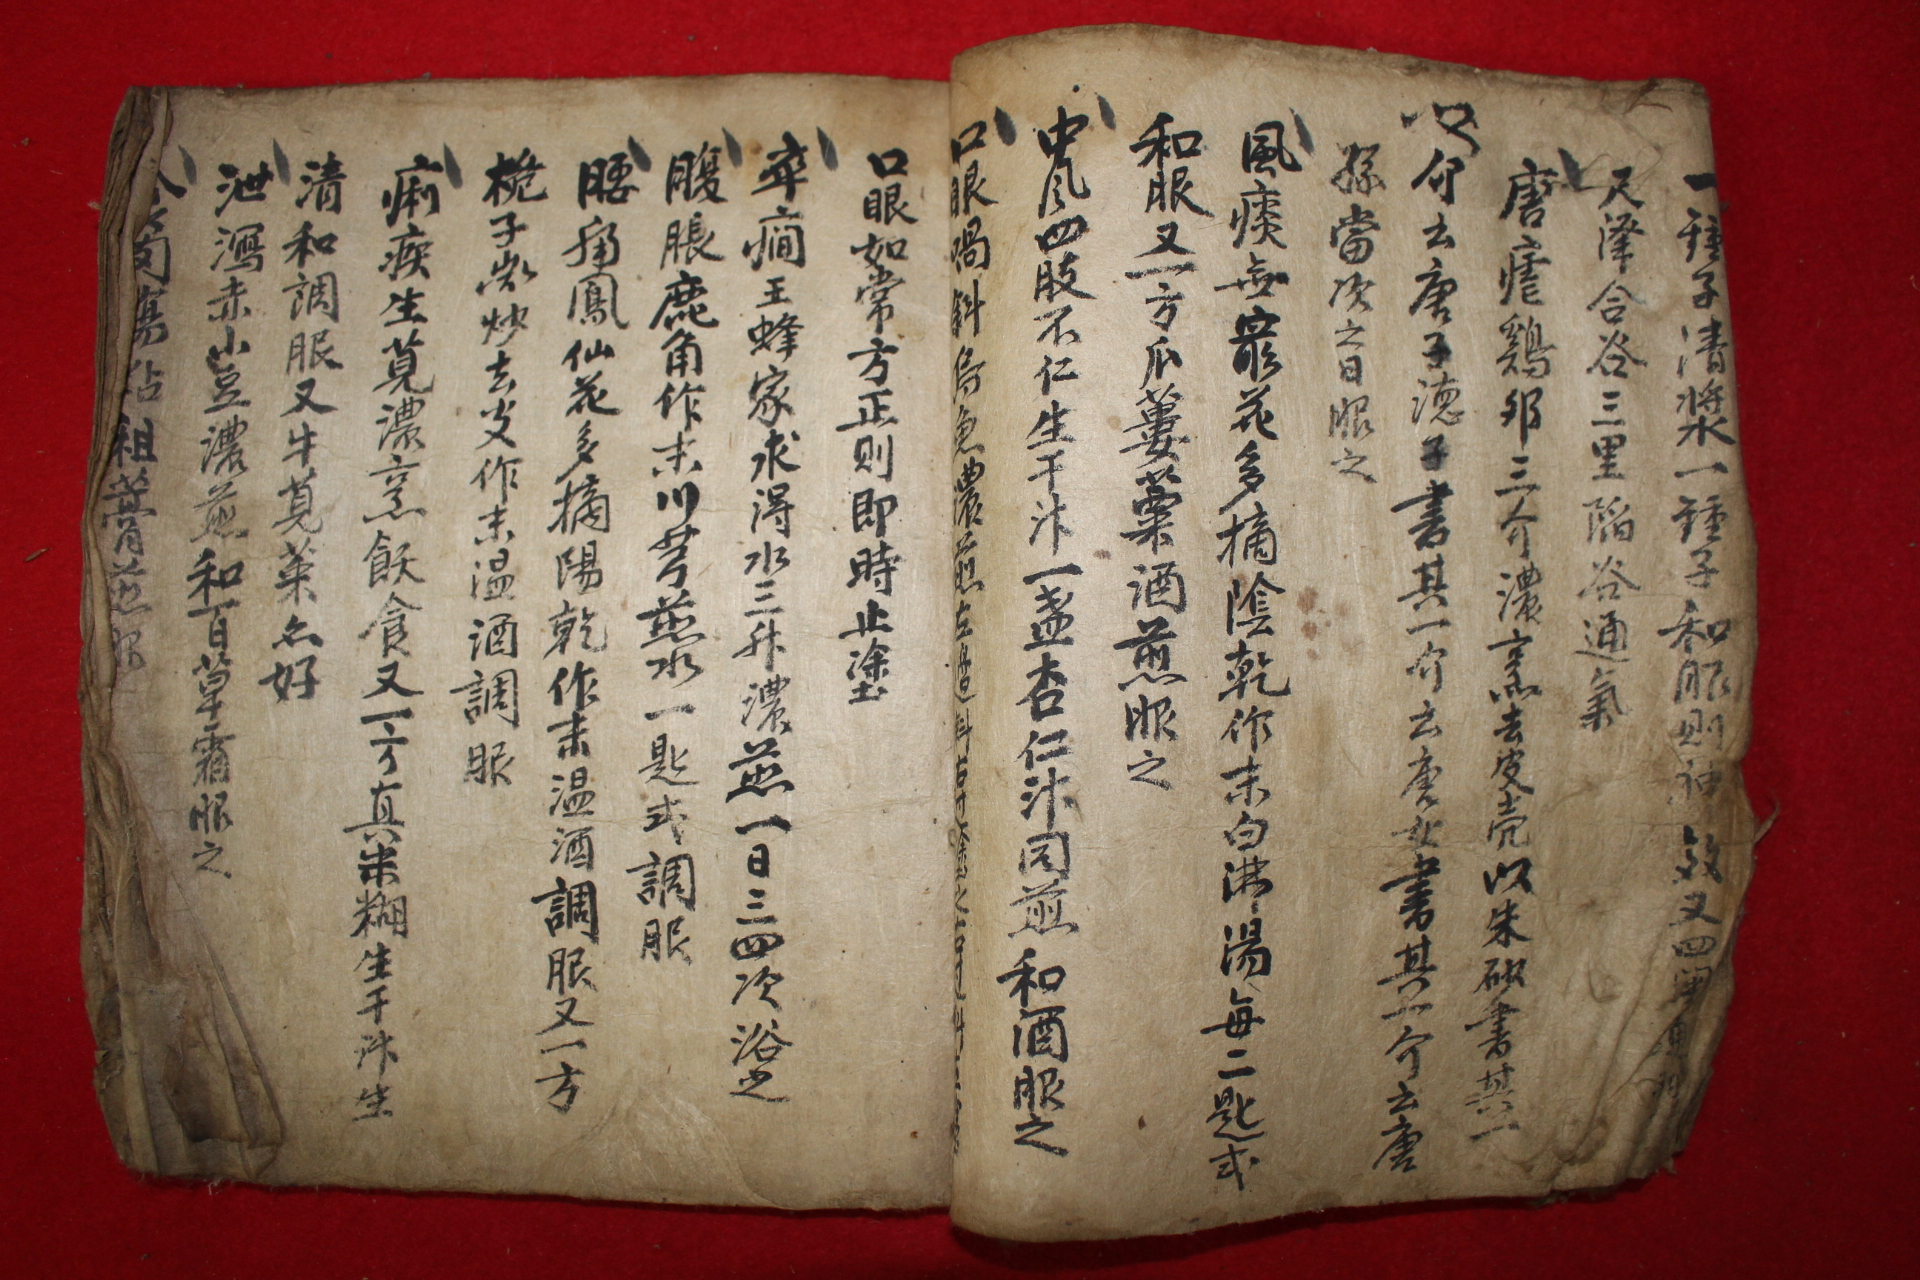 조선시대 필사본 의서 구급단방